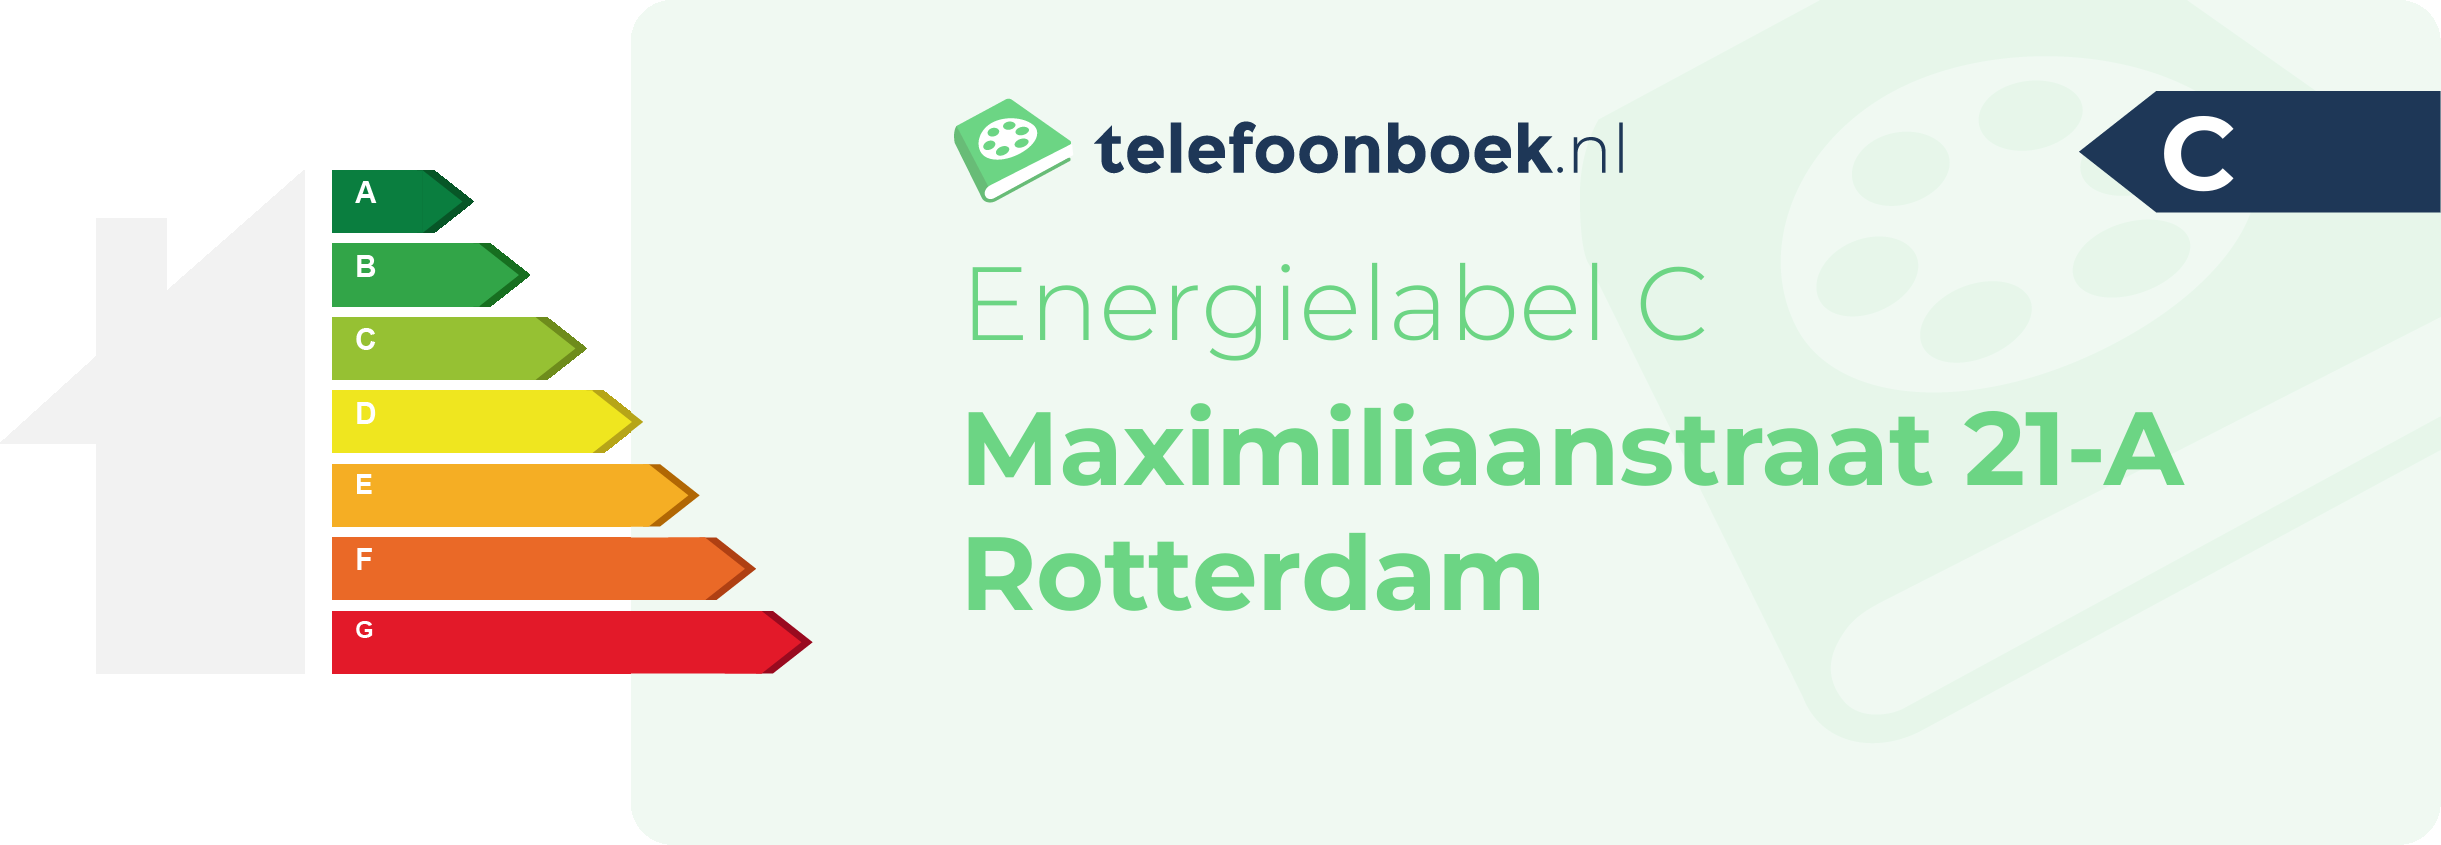 Energielabel Maximiliaanstraat 21-A Rotterdam